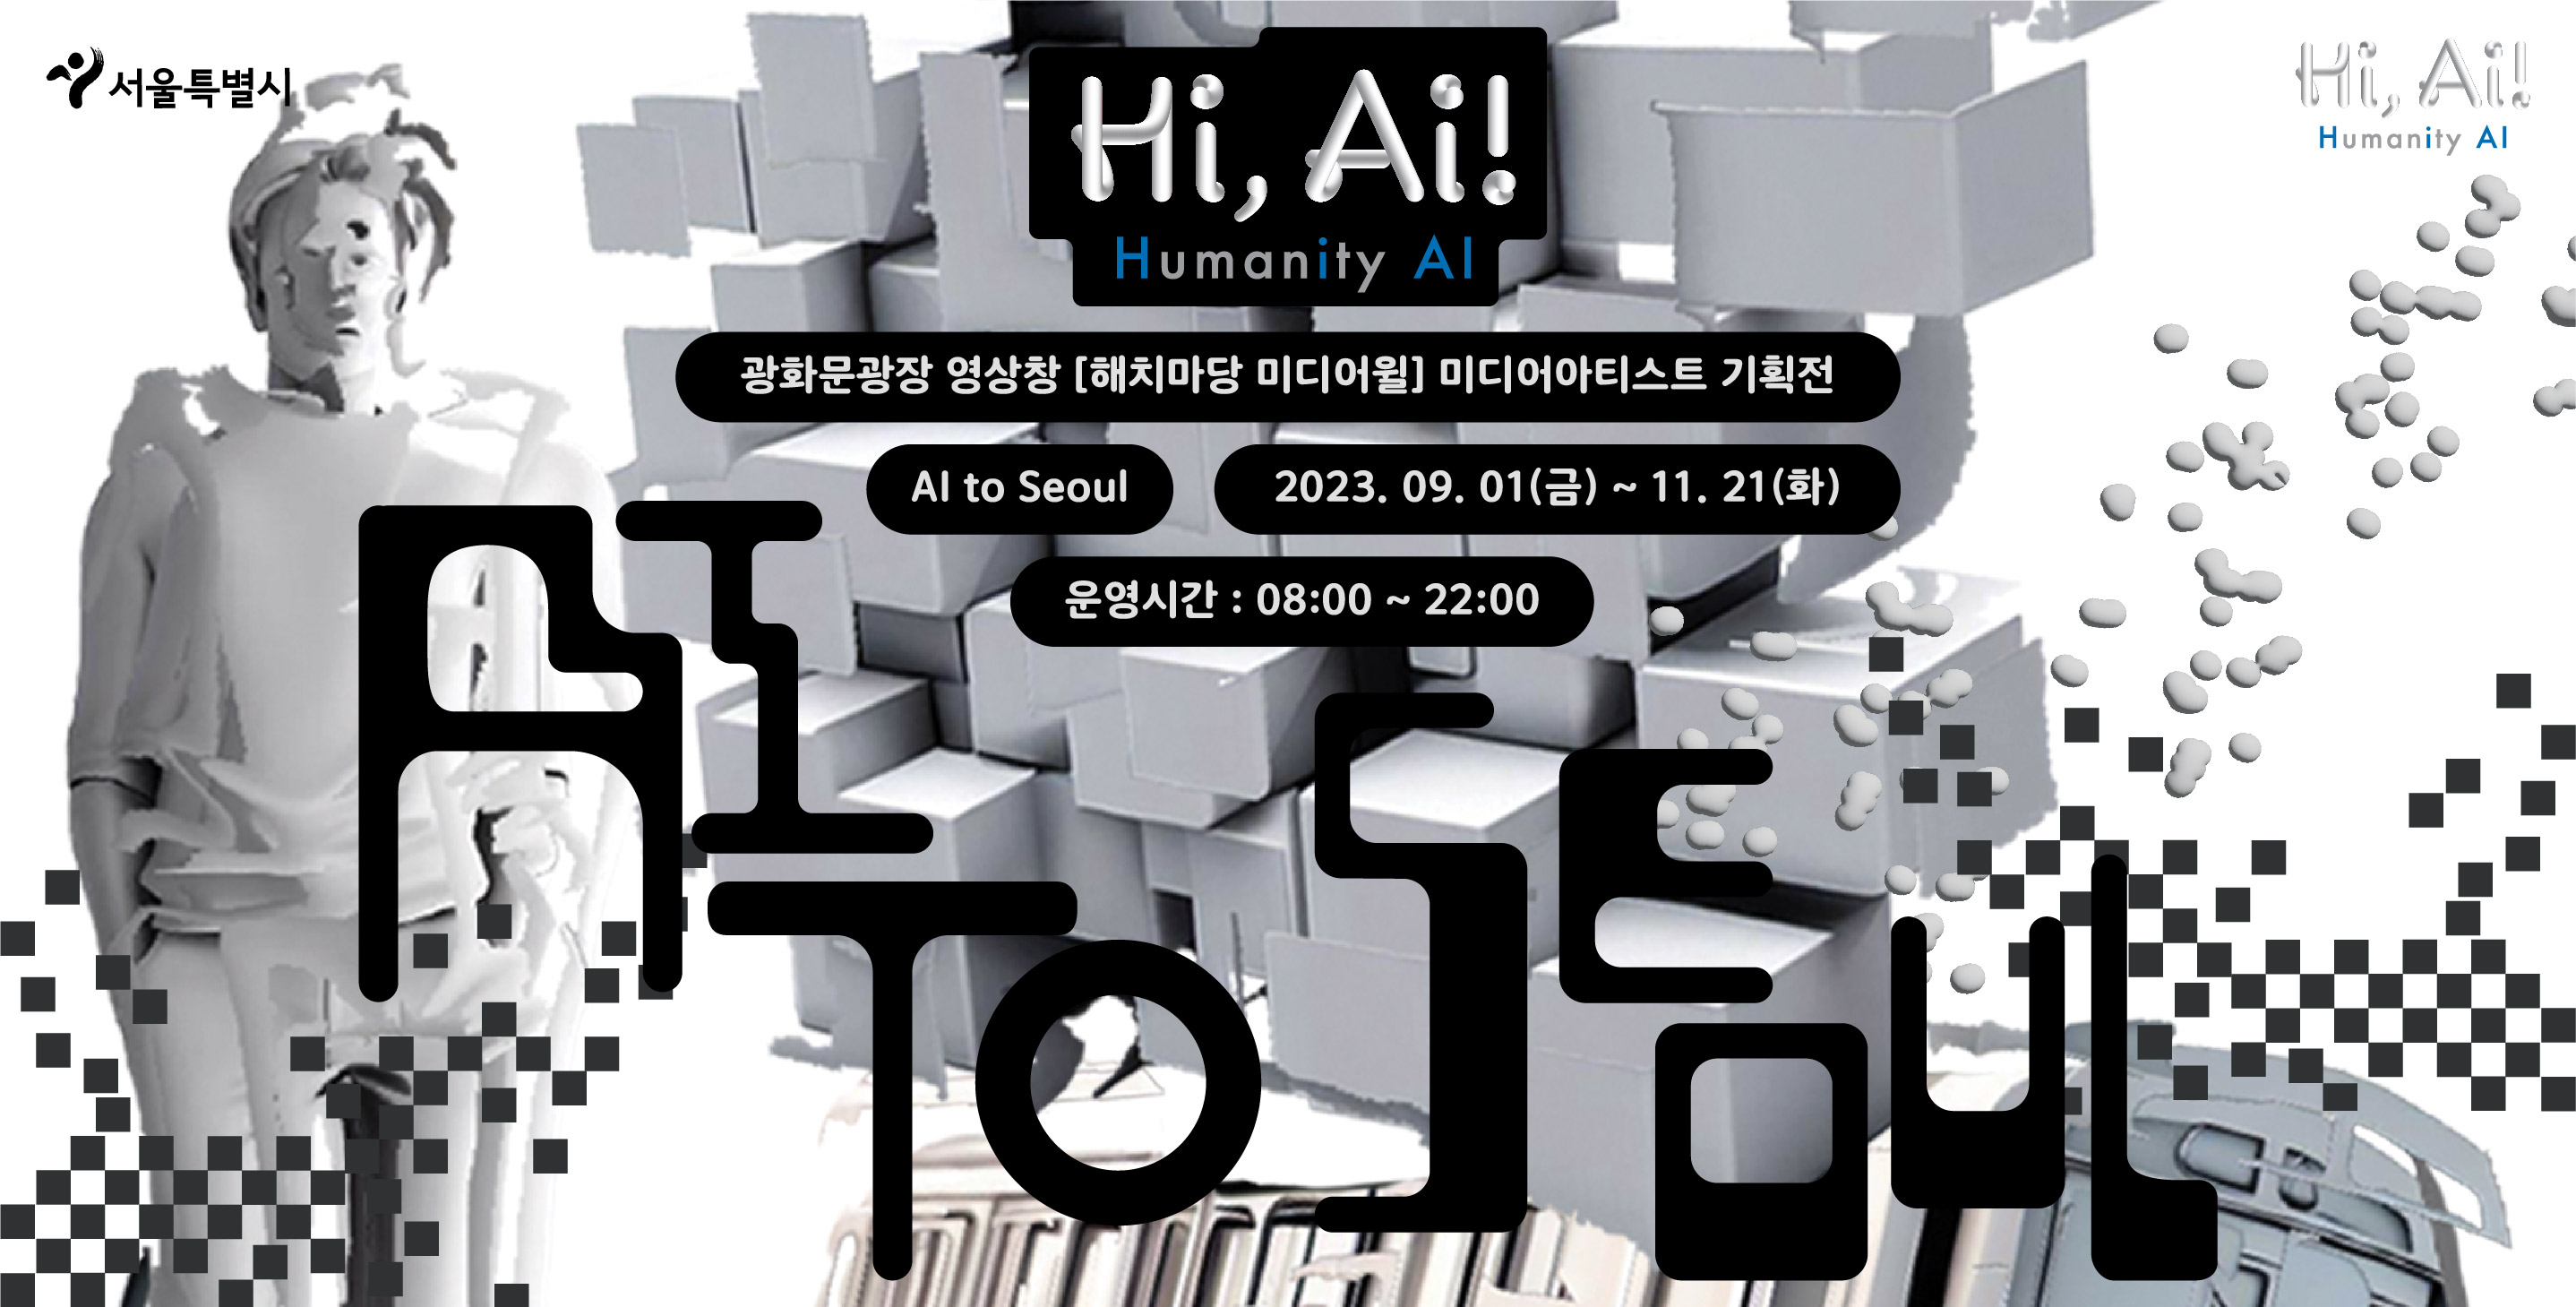 9월부터 광화문광장에 인공지능 활용해 만든 미디어 전시 <Hi, AI!>